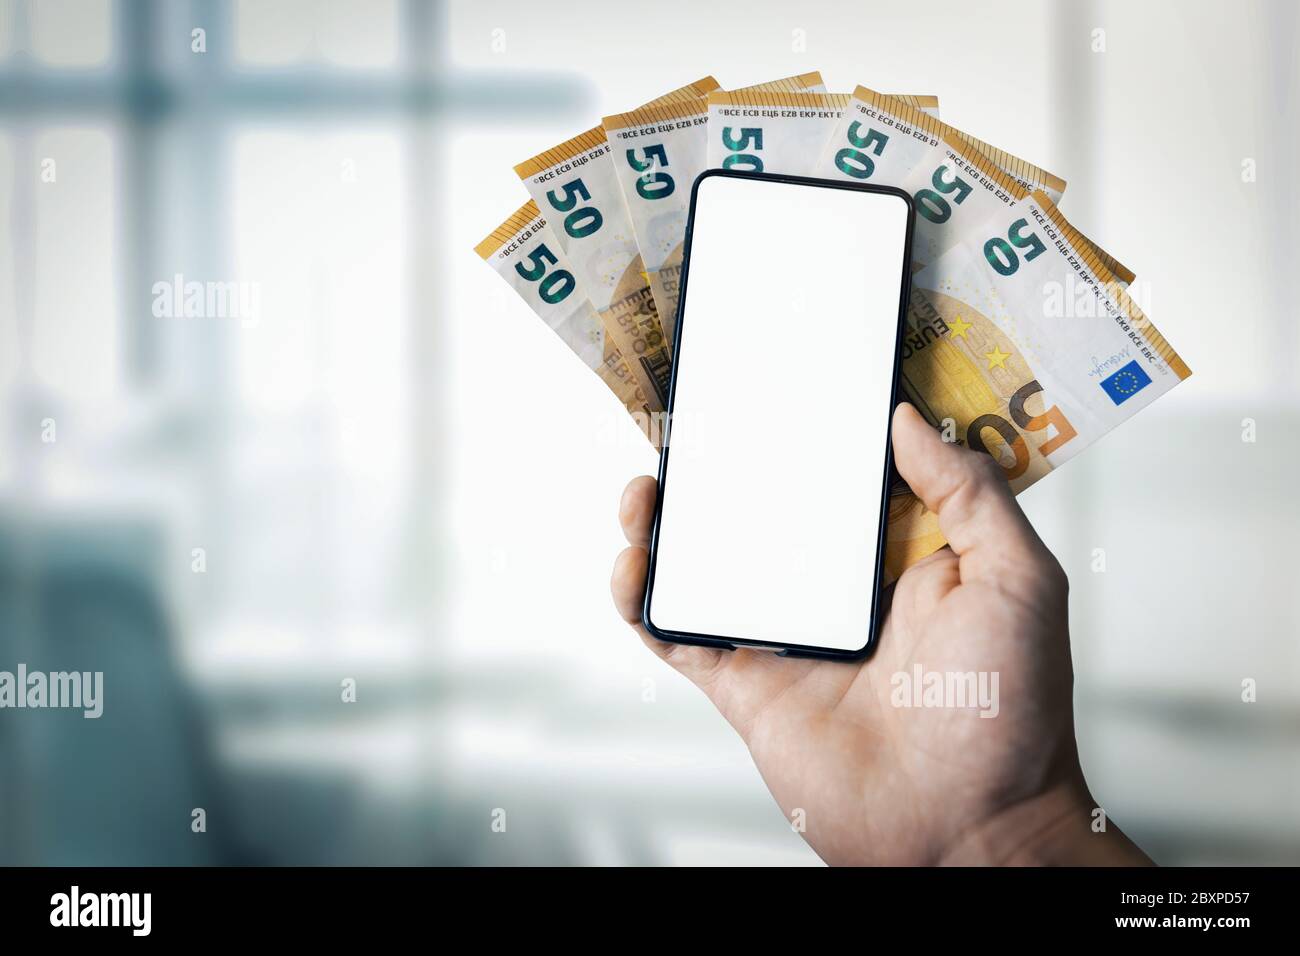 Online-Banking, E-Commerce und digitale Geldbörse Konzept - Hand halten Euro-Geld und Handy mit leerem Bildschirm in der Hand Stockfoto